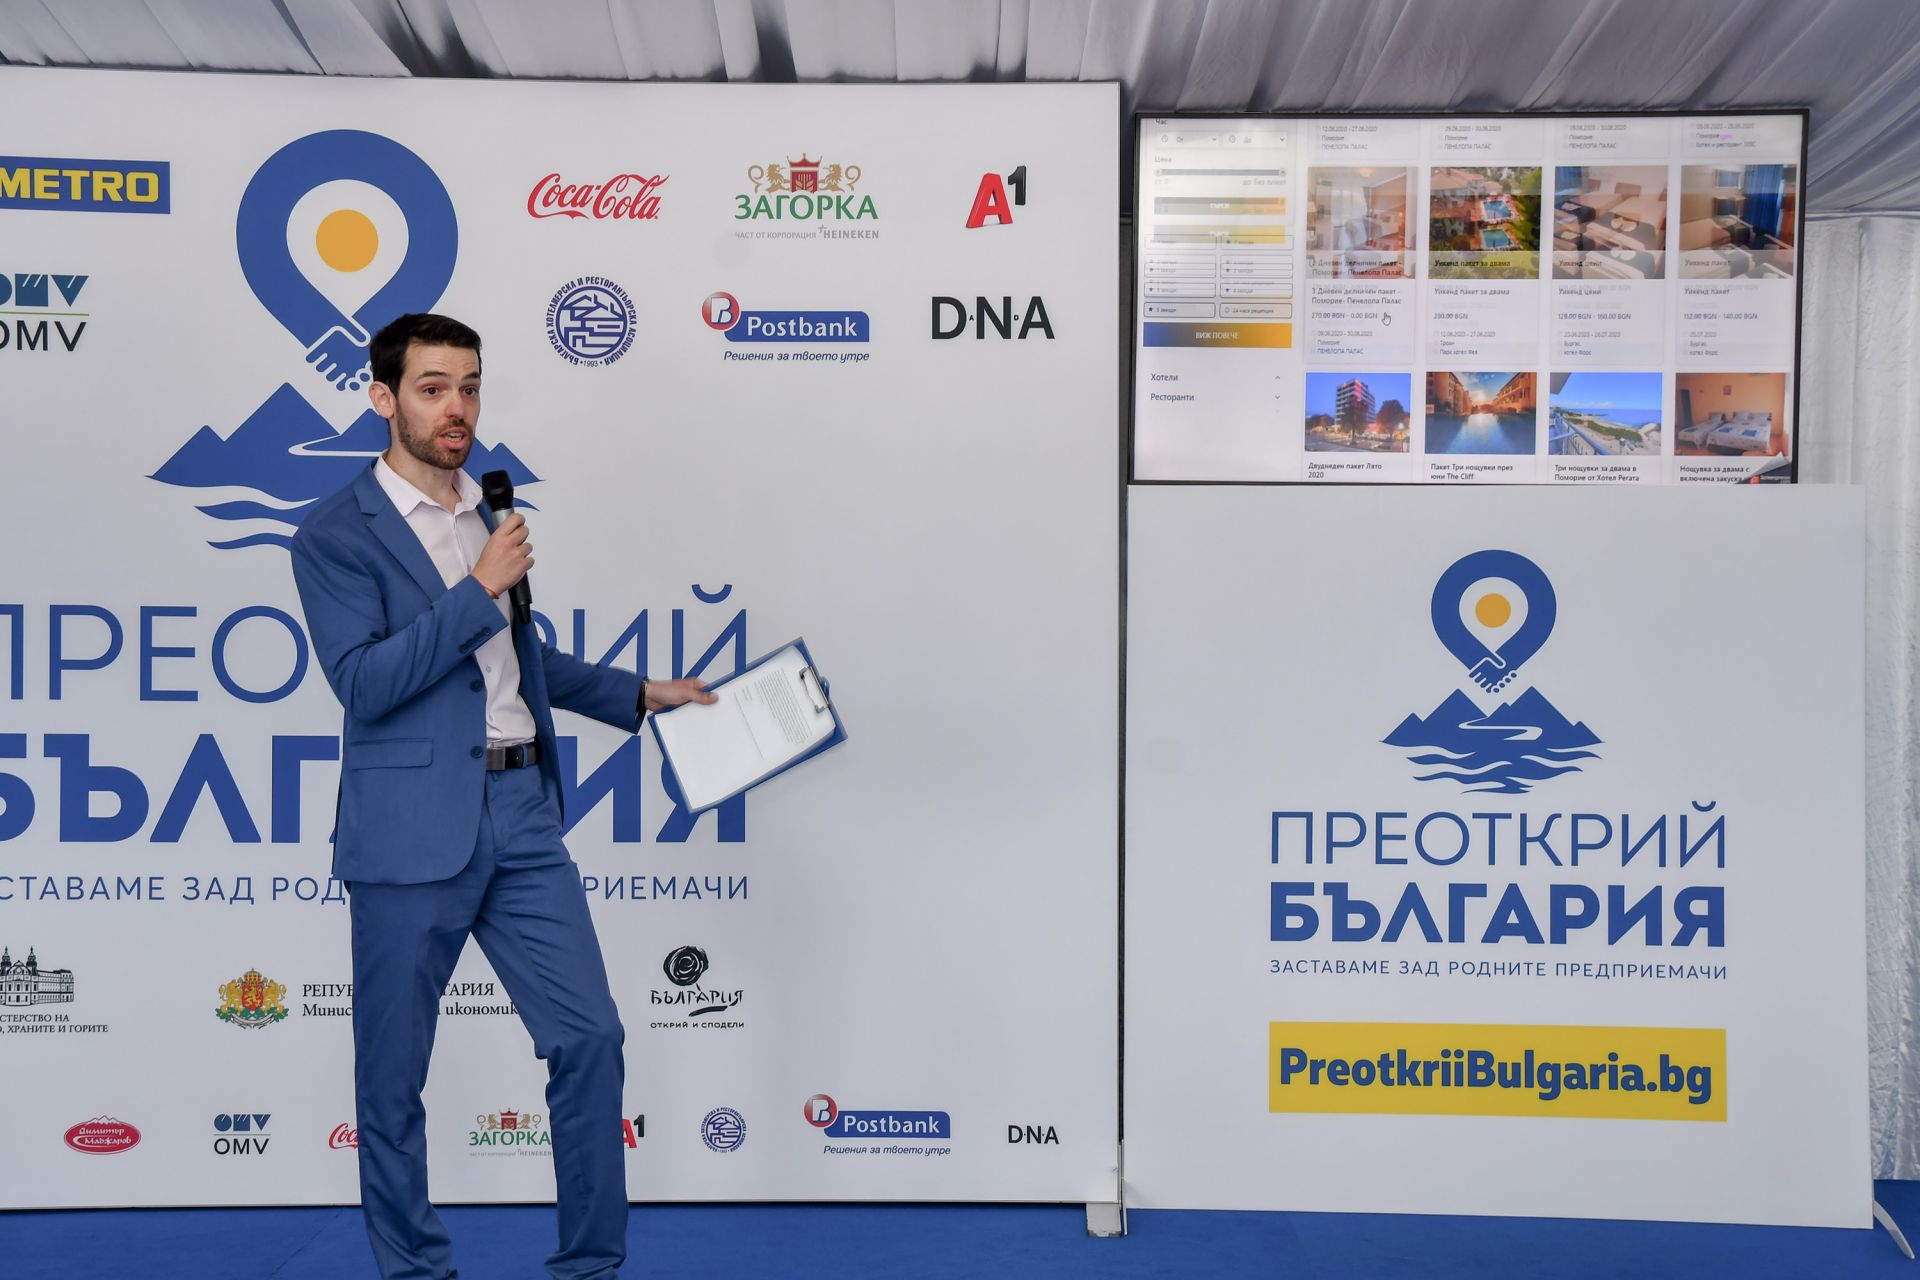 Венелин Иванов, ръководител сектор Електронна търговия МЕТРО, представя възможностите на платформата за резервации  „Преоткрий България“